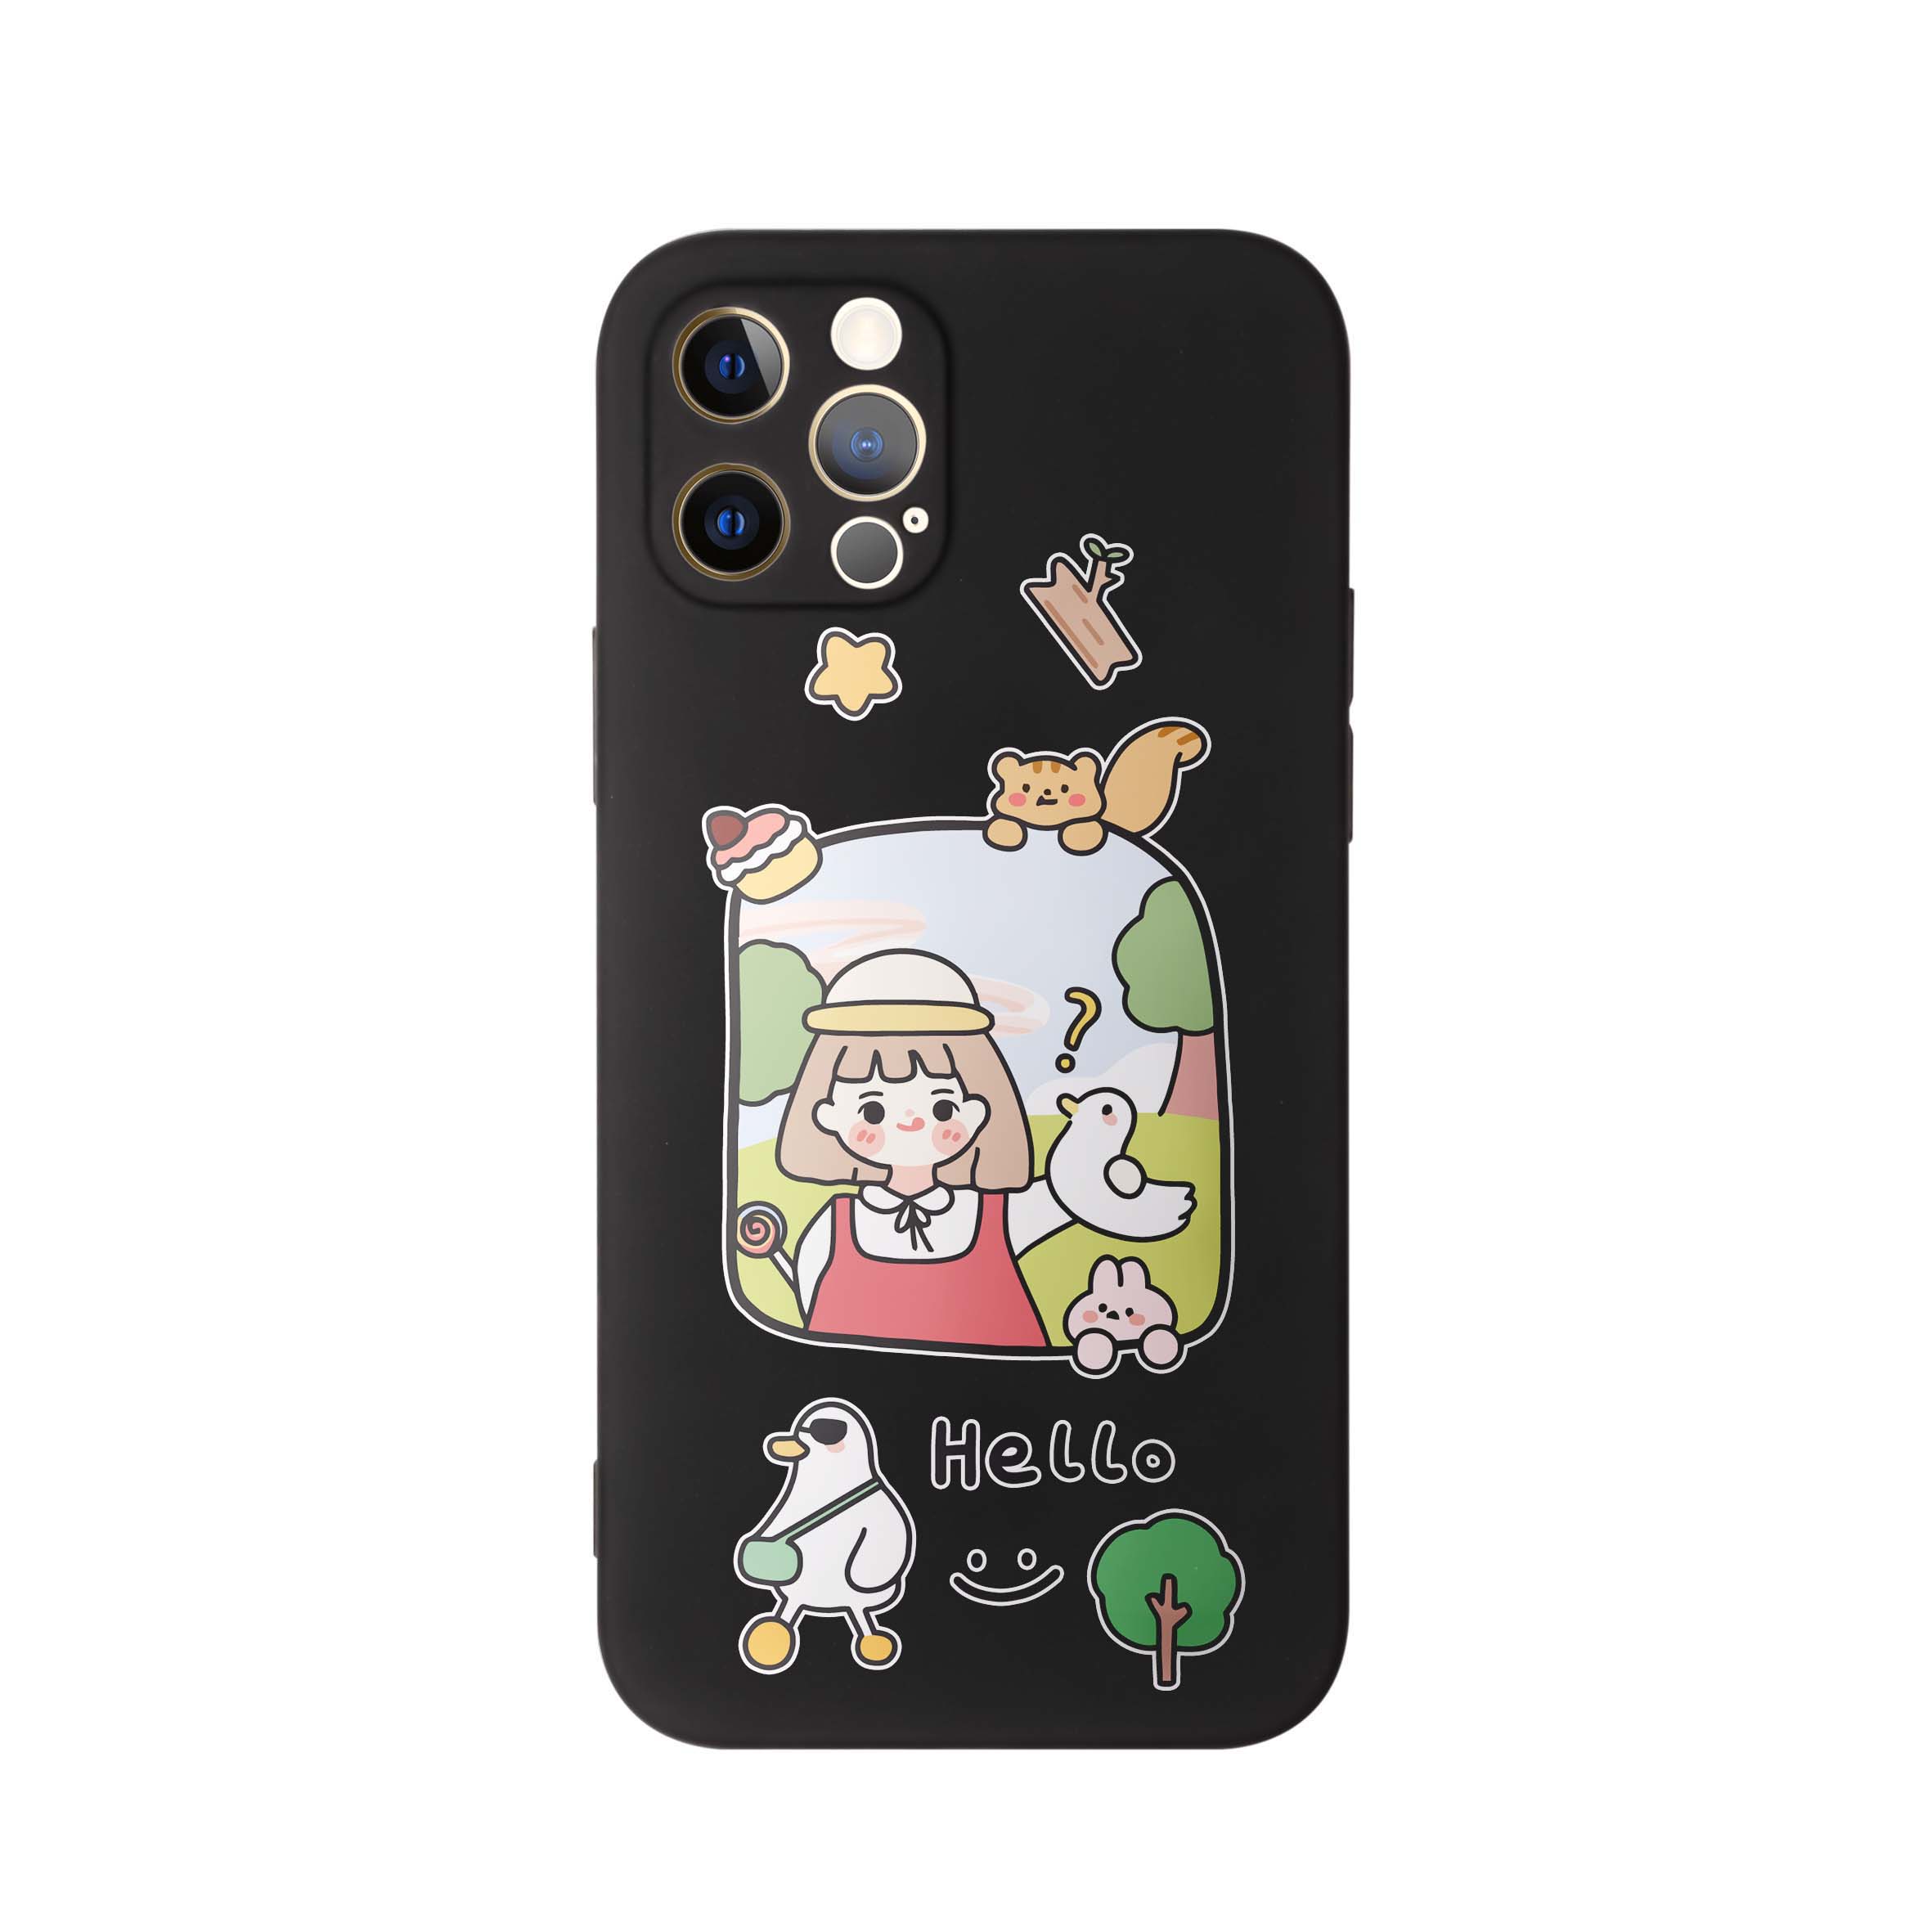 کاور طرح دختر جنگل کد m4340 مناسب برای گوشی موبایل اپل iphone 11 Pro